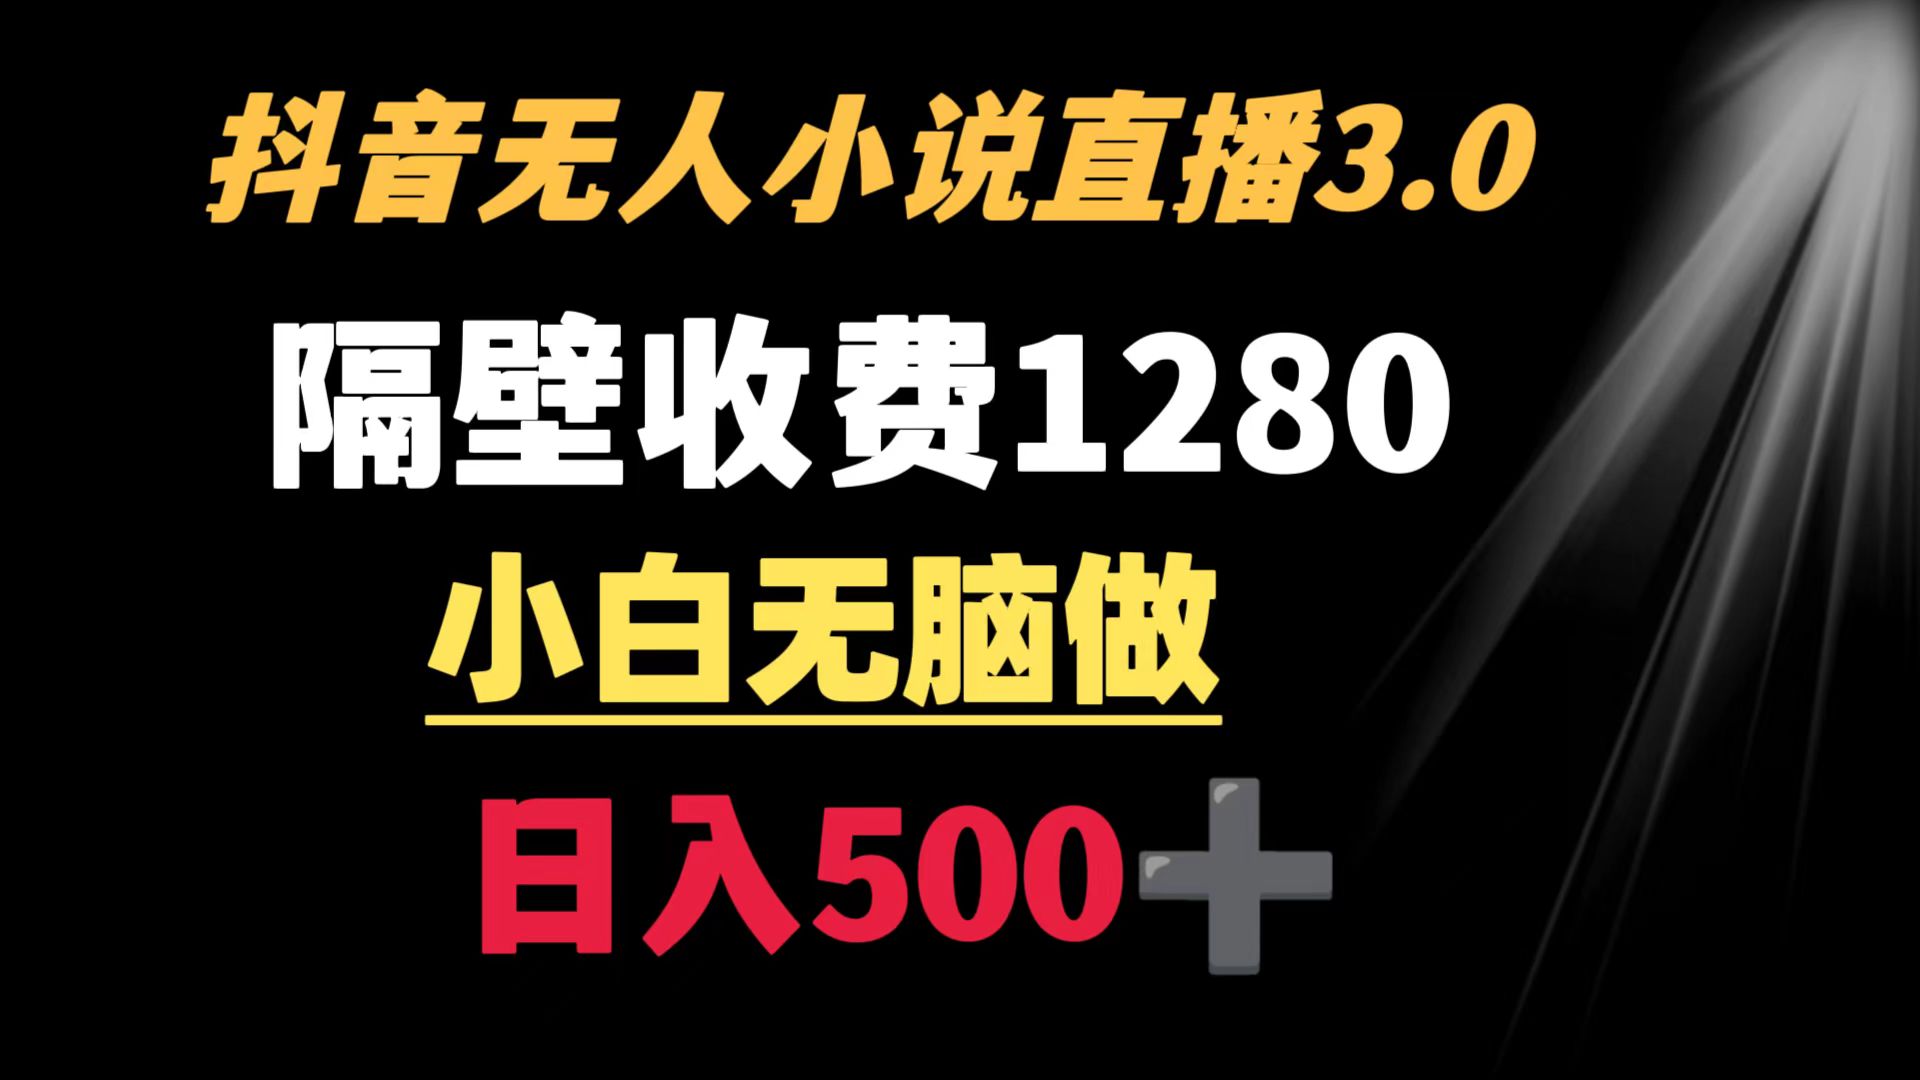 抖音小说无人3.0玩法 隔壁收费1280 轻松日入500+-臭虾米项目网